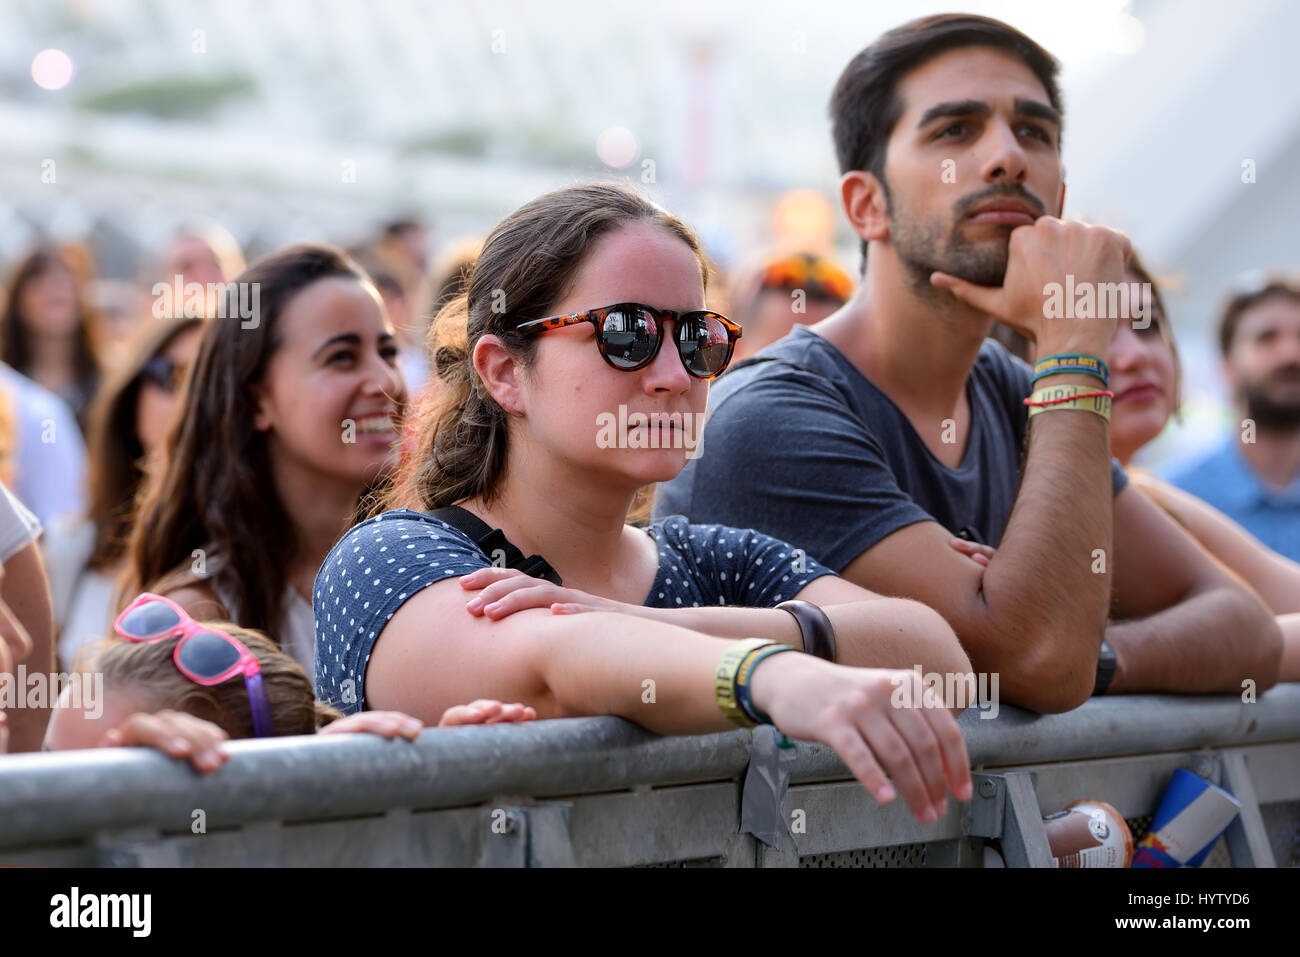 VALENCIA, SPAIN - JUN 10: The crowd at Festival de les Arts on June 10, 2016 in Valencia, Spain. Stock Photo